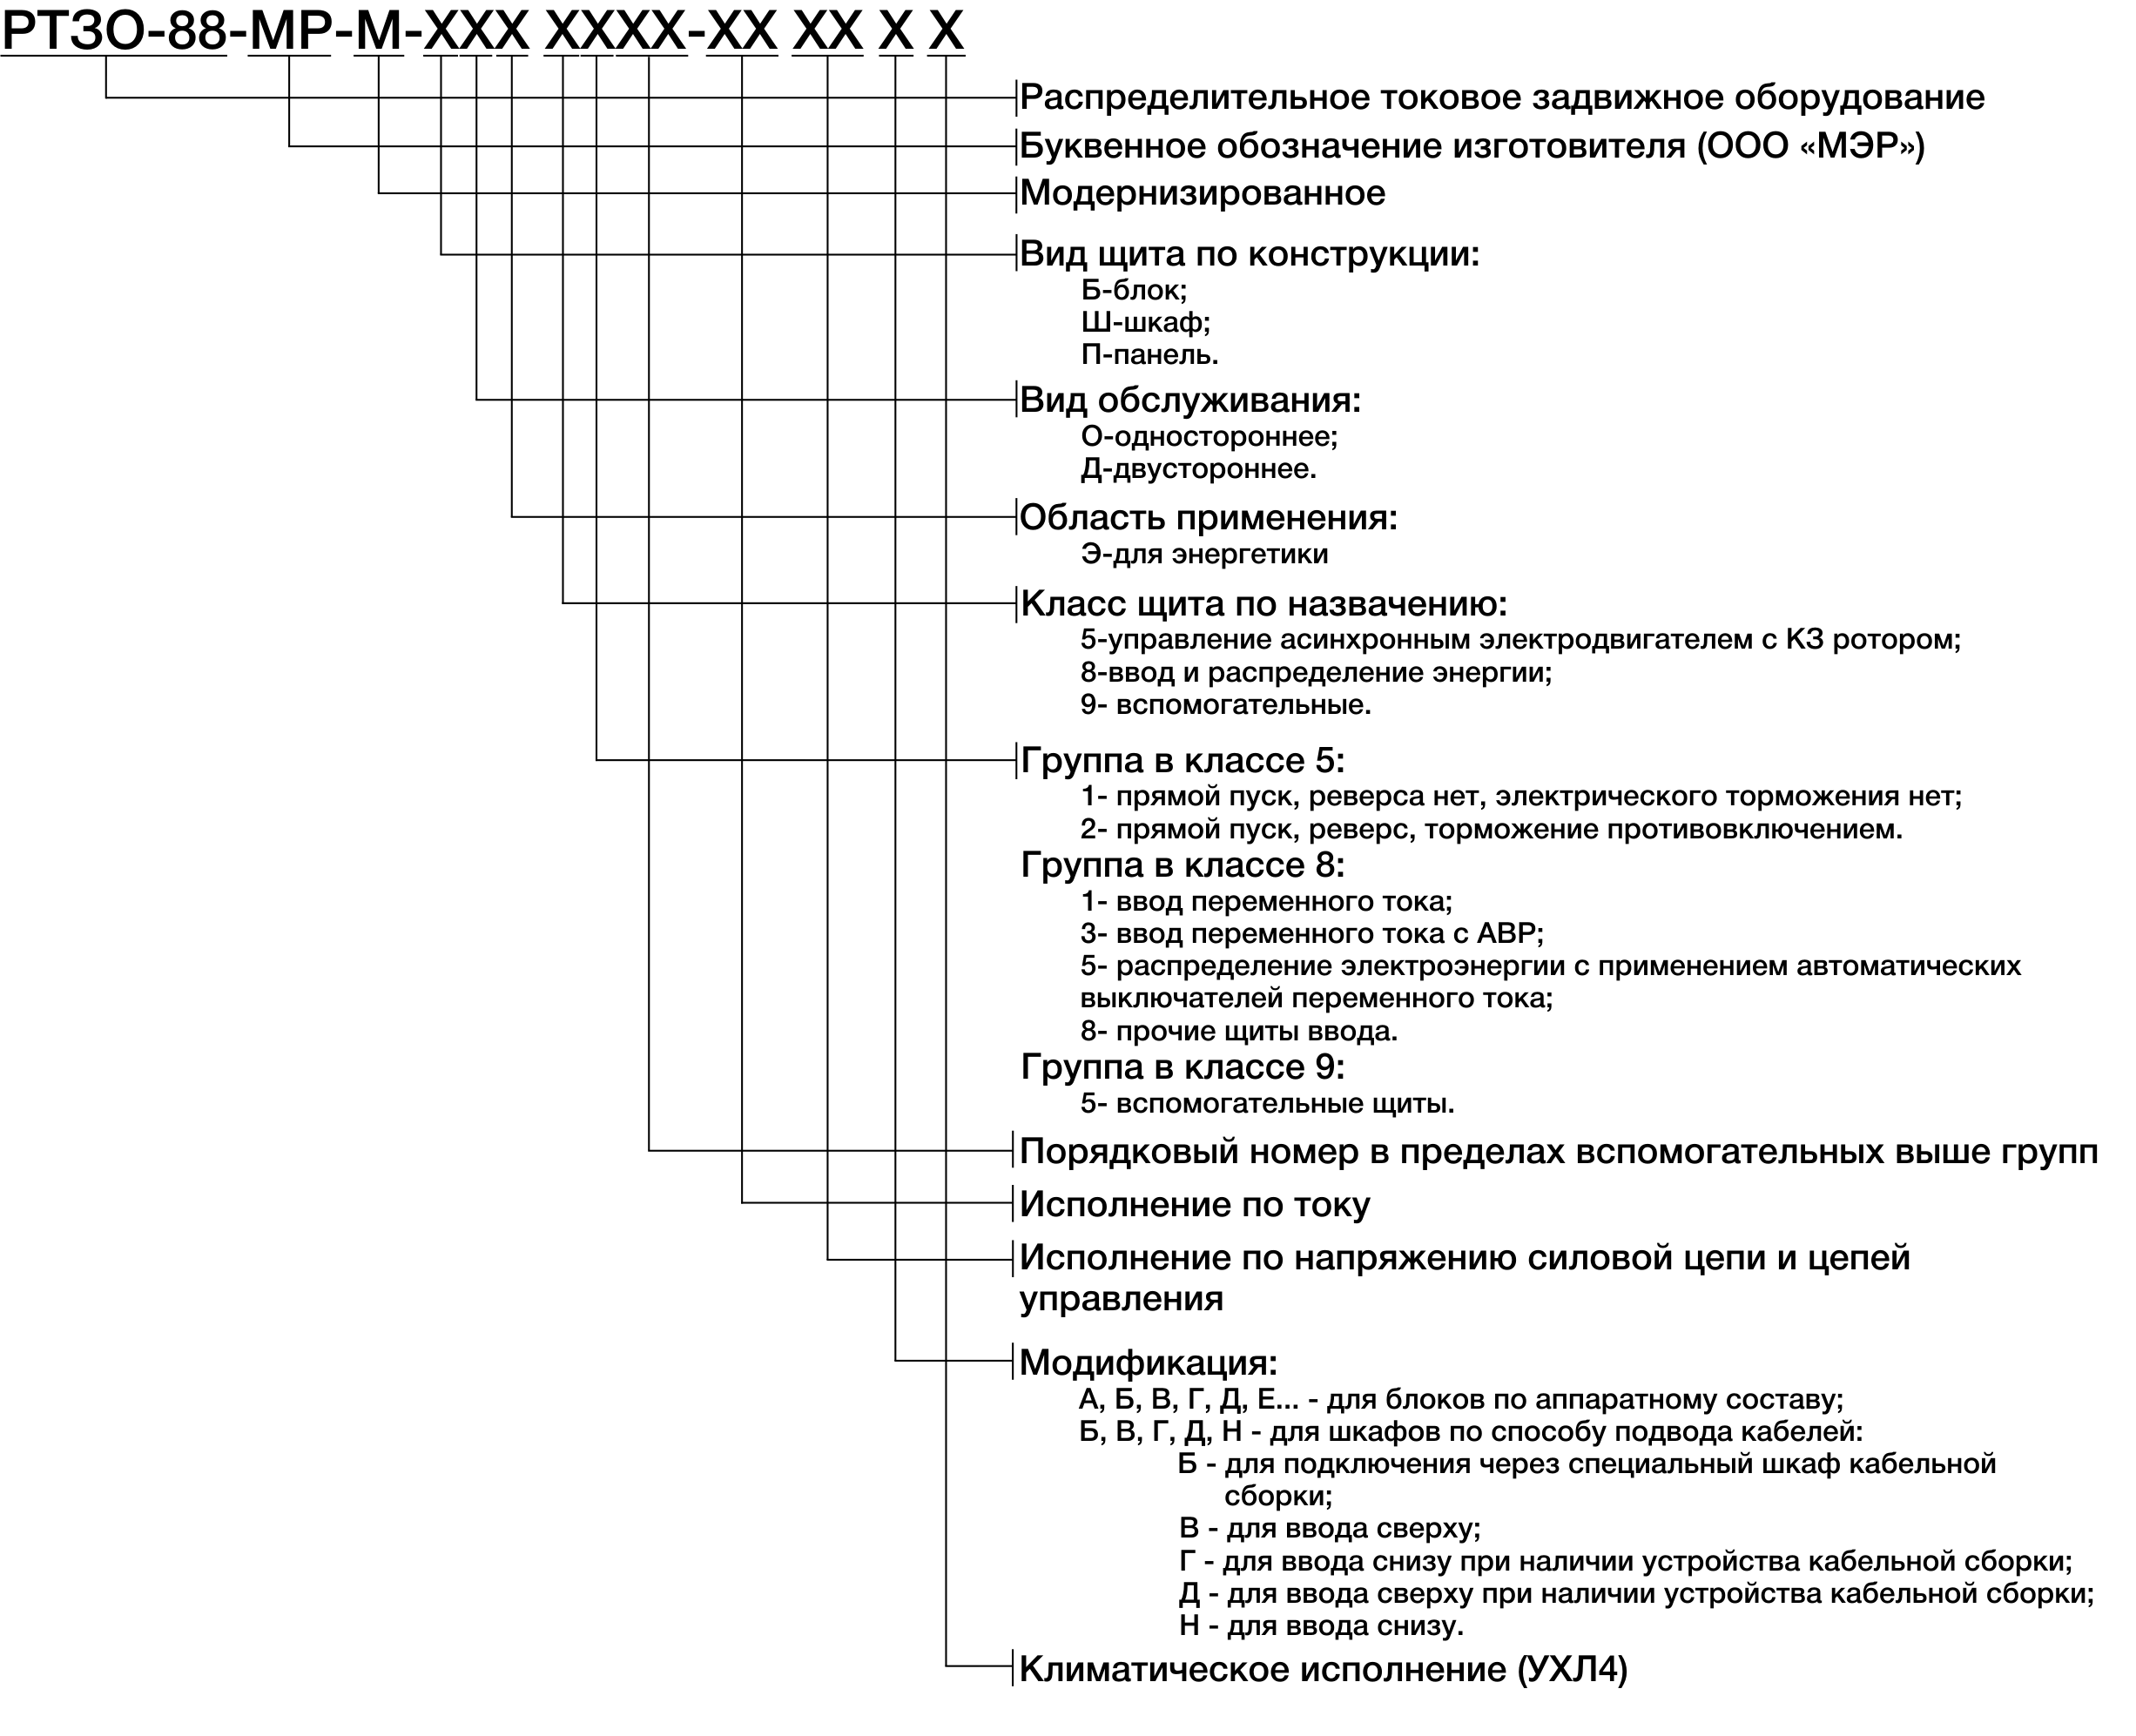 Структура условного обозначения щитов РТЗОМР-М